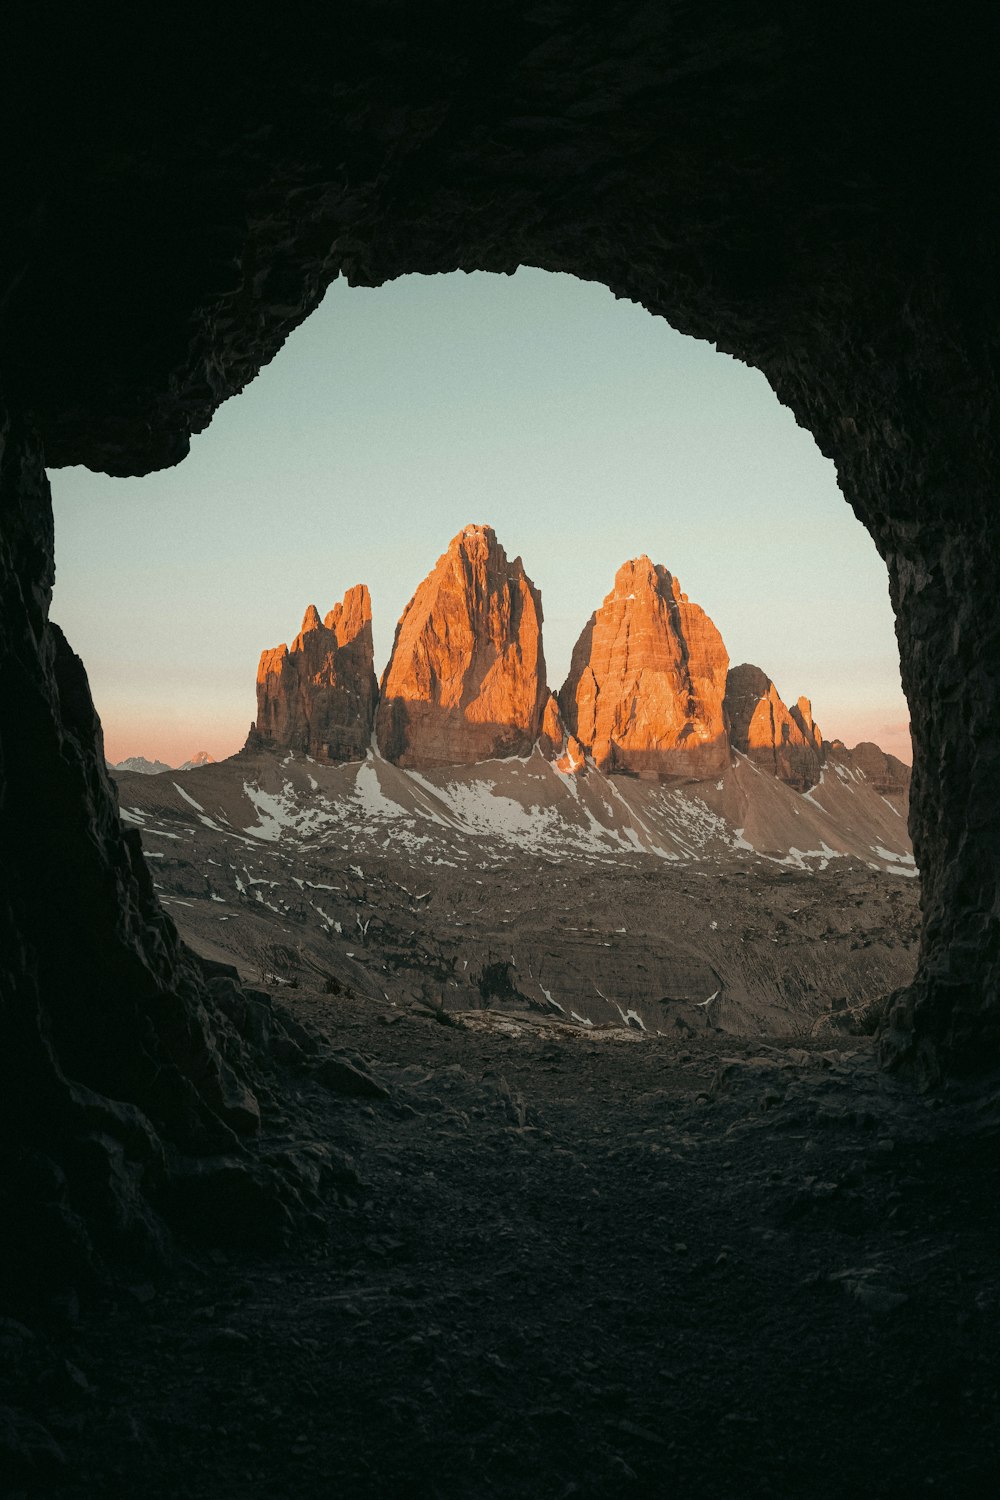 Una vista de una cadena montañosa a través de una cueva